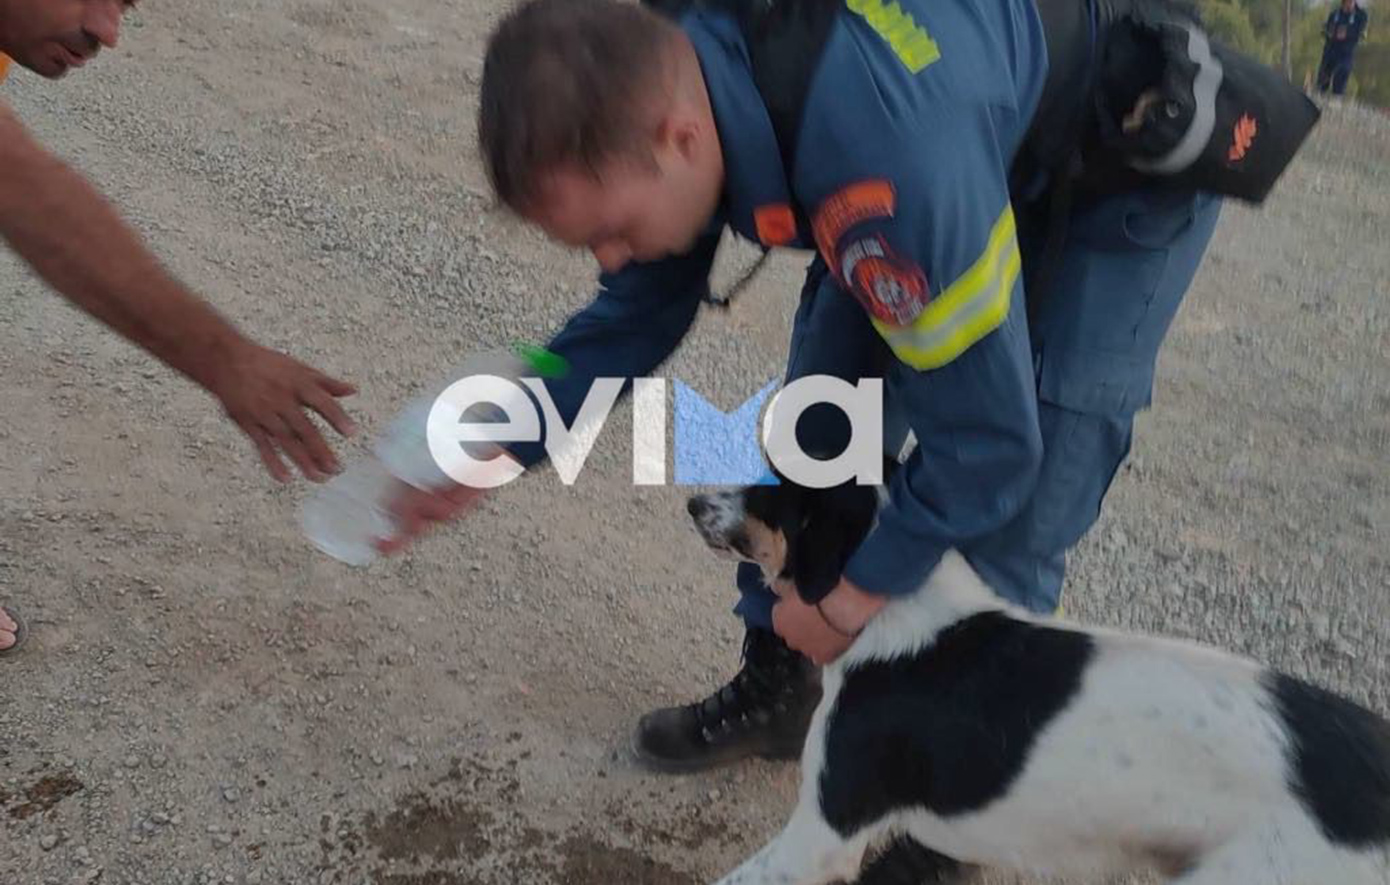 Φωτιά στην Εύβοια: Πυροσβέστες έσωσαν σκυλάκι – Το έβγαλαν από μαντρί που είχε περικυκλωθεί από τις φλόγες και του έδωσαν νερό